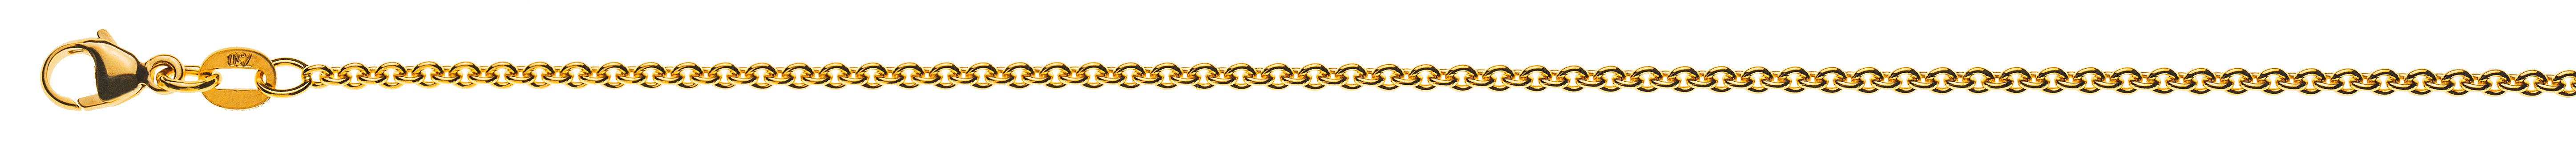 AURONOS Prestige Halskette Gelbgold 18K Rundanker 45cm 1.9mm